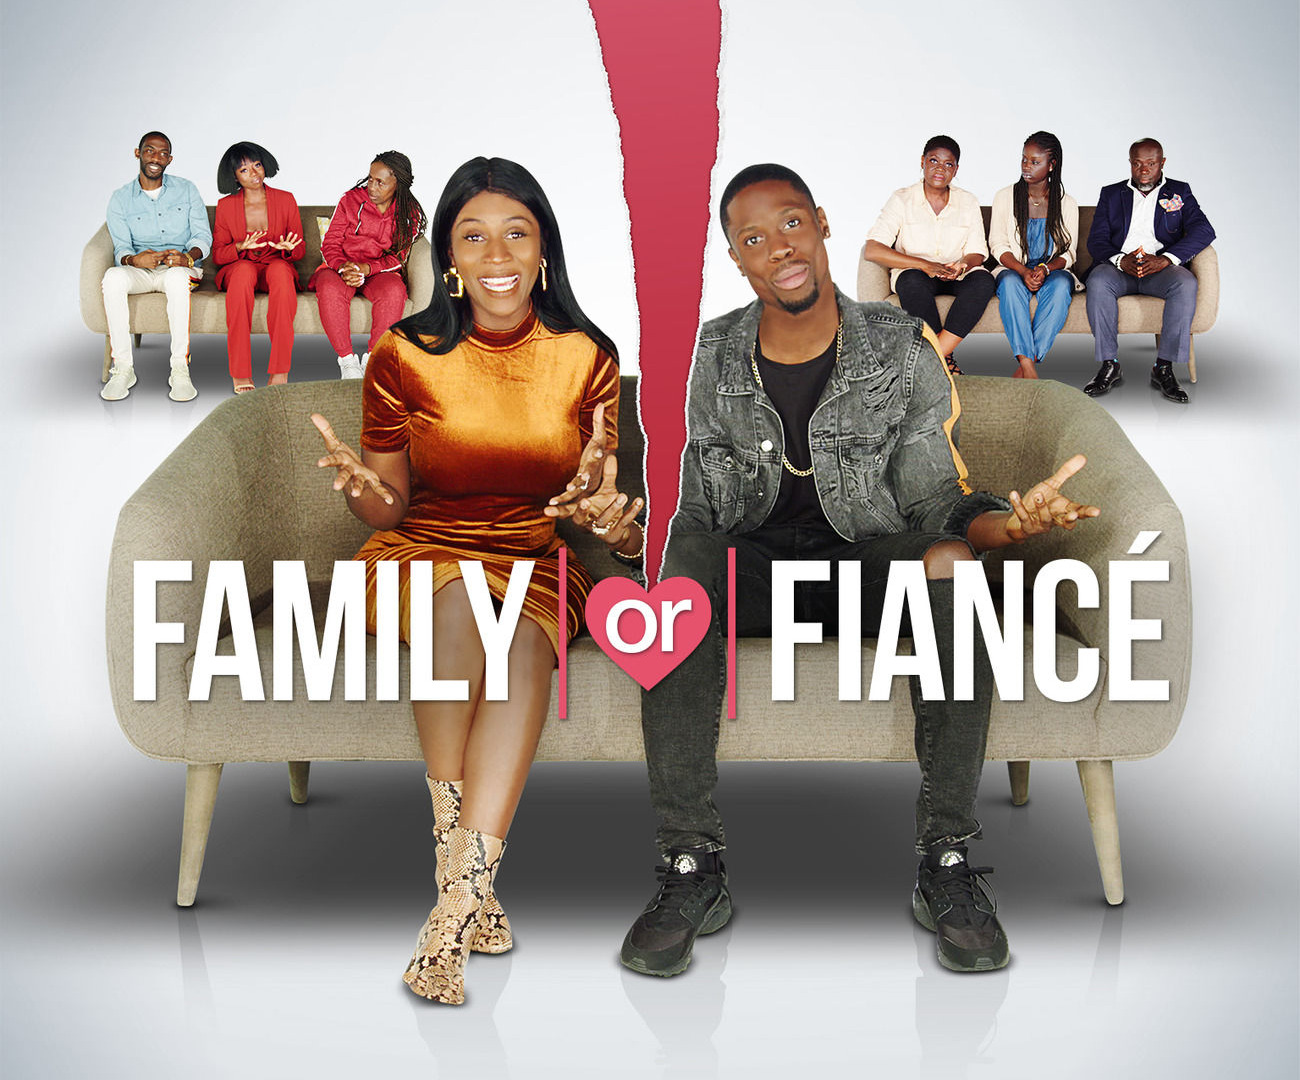 Show Family or Fiancé